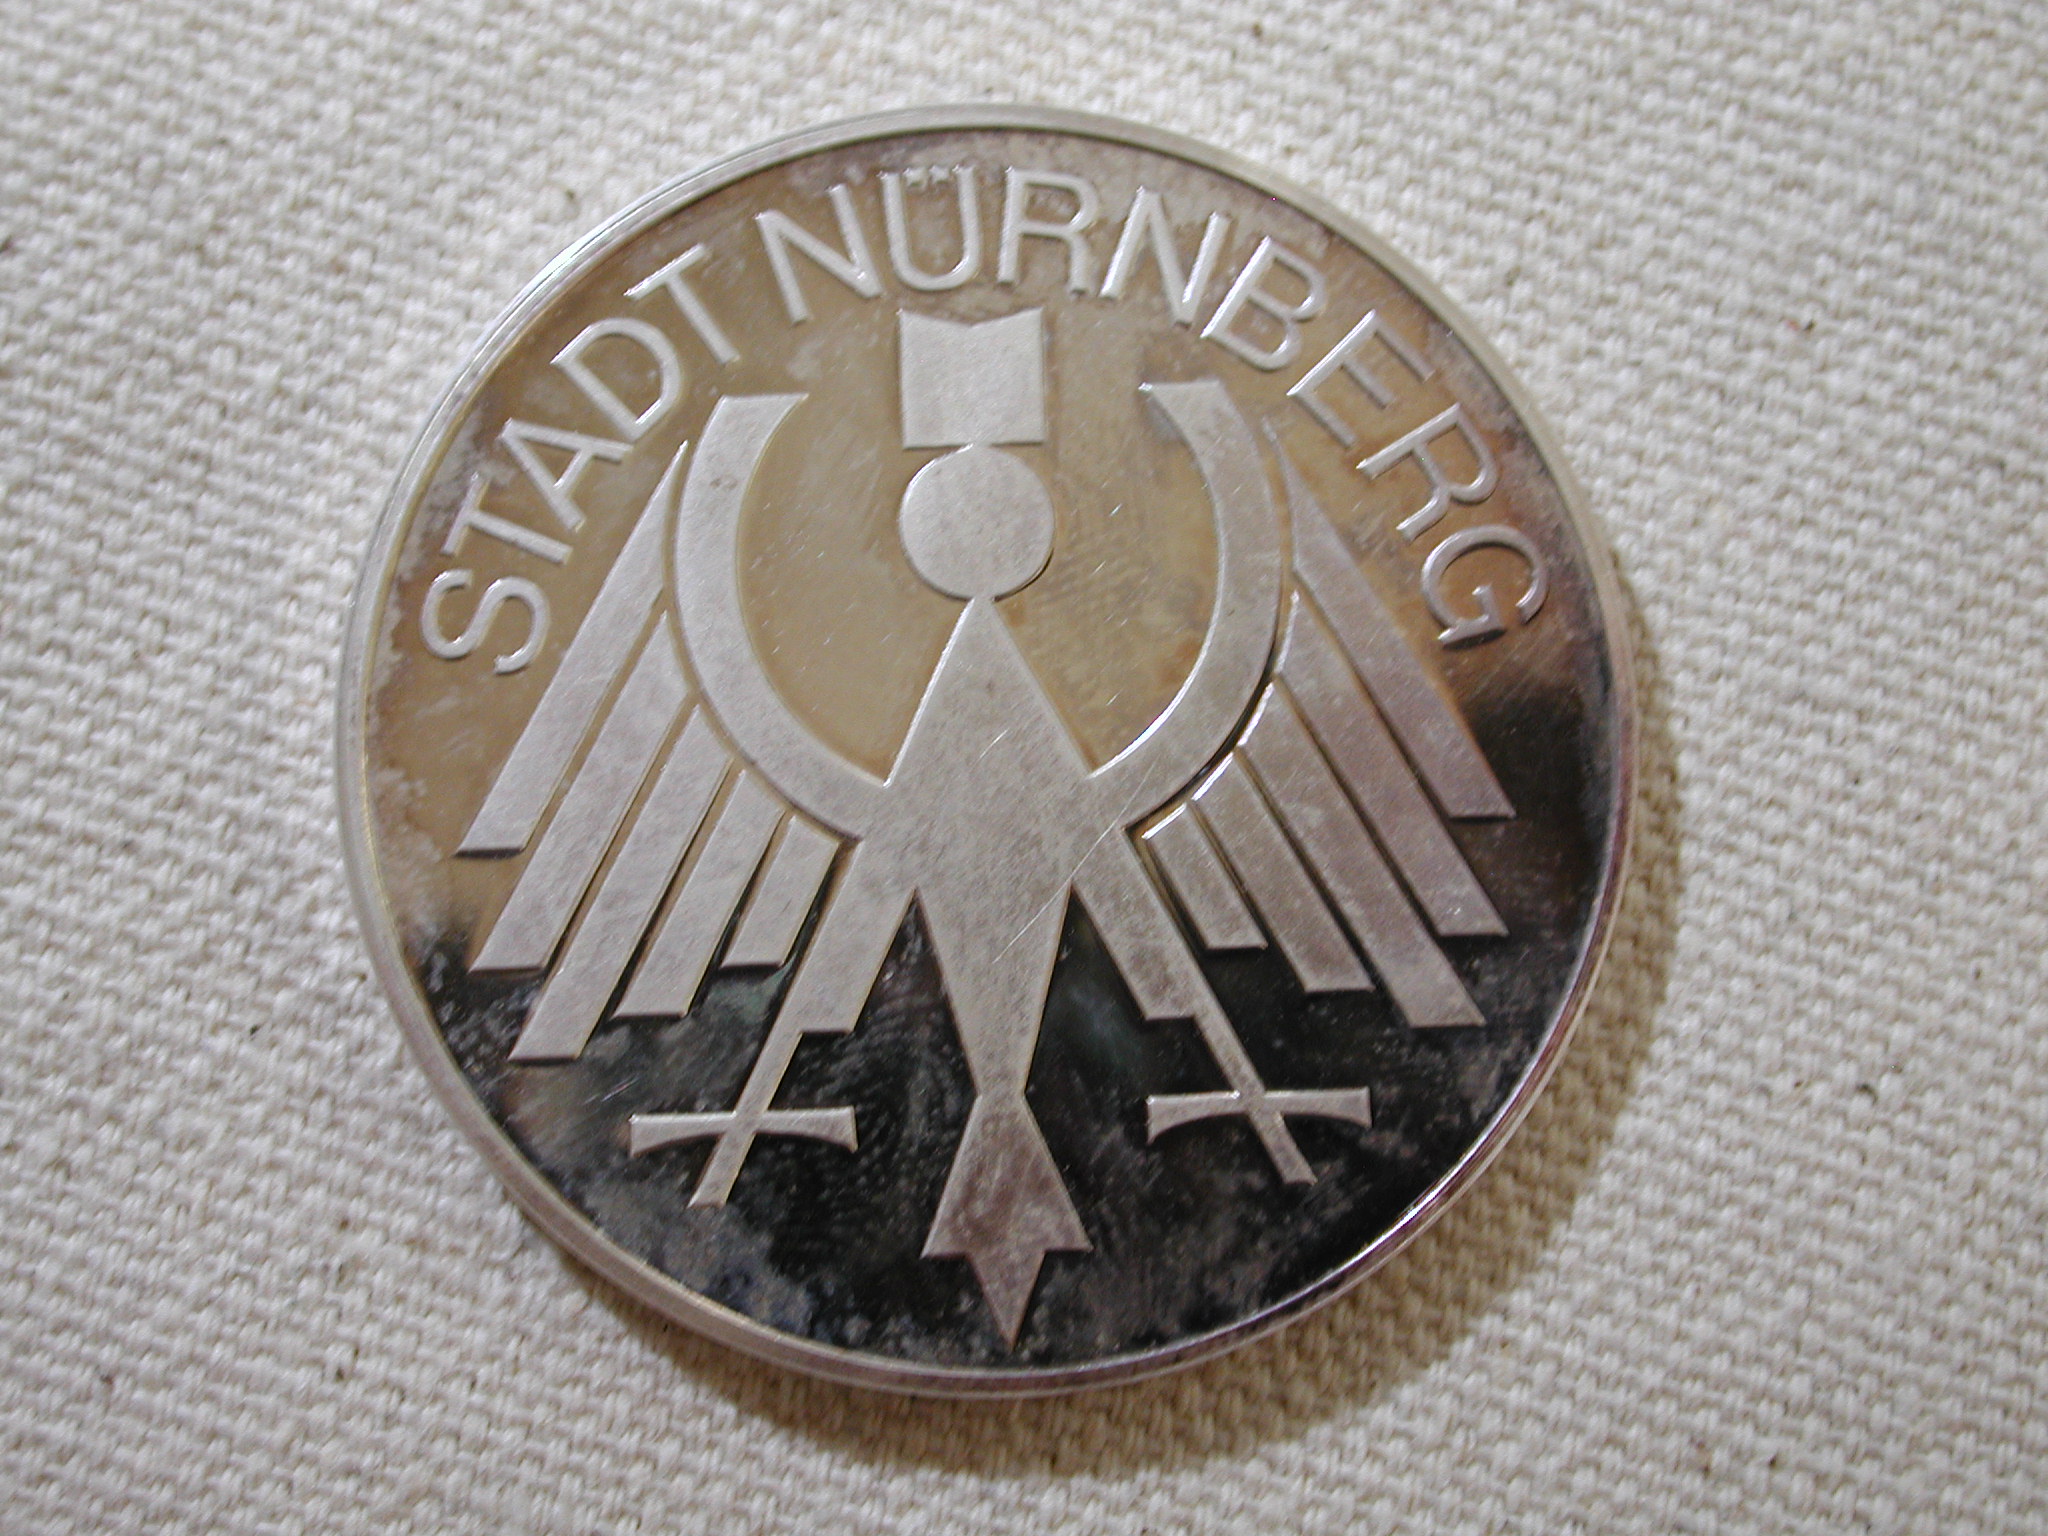 1978 Nurnberg Untergrund bahn in der Altstadt commemorative coin